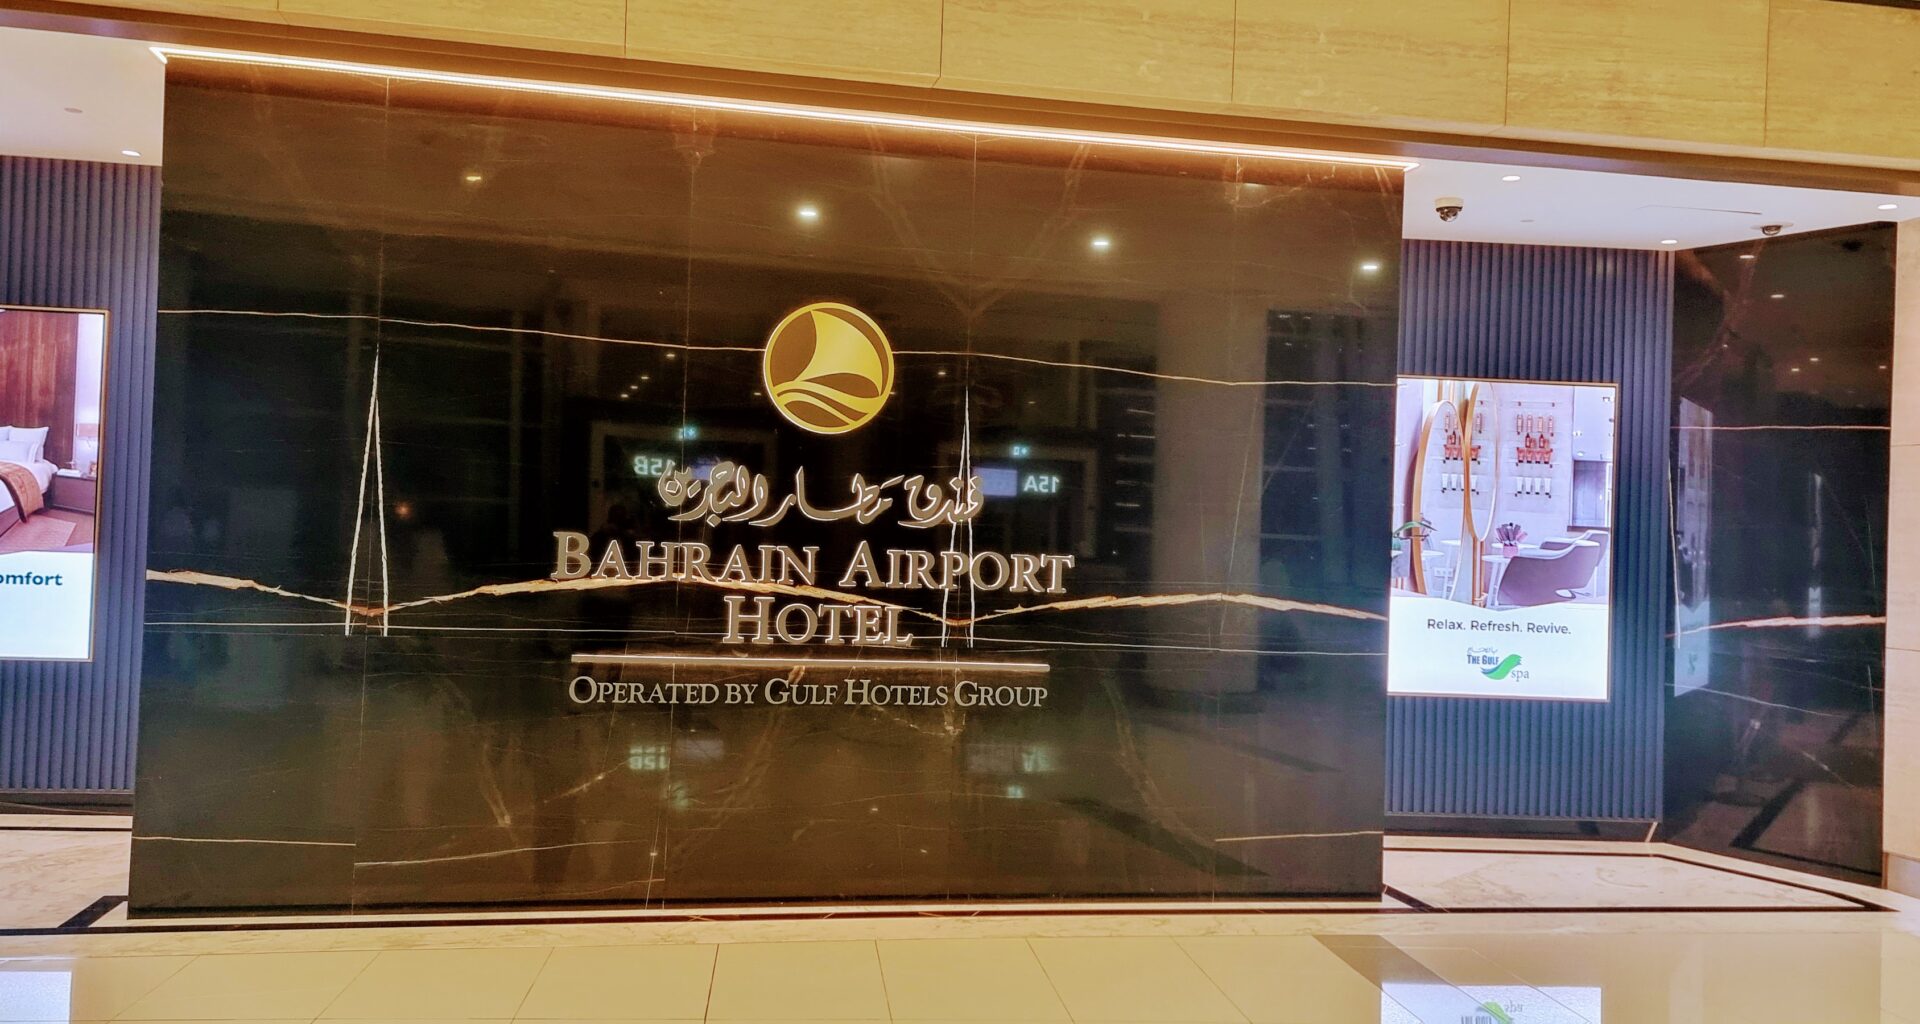 Bahrain airport hotel